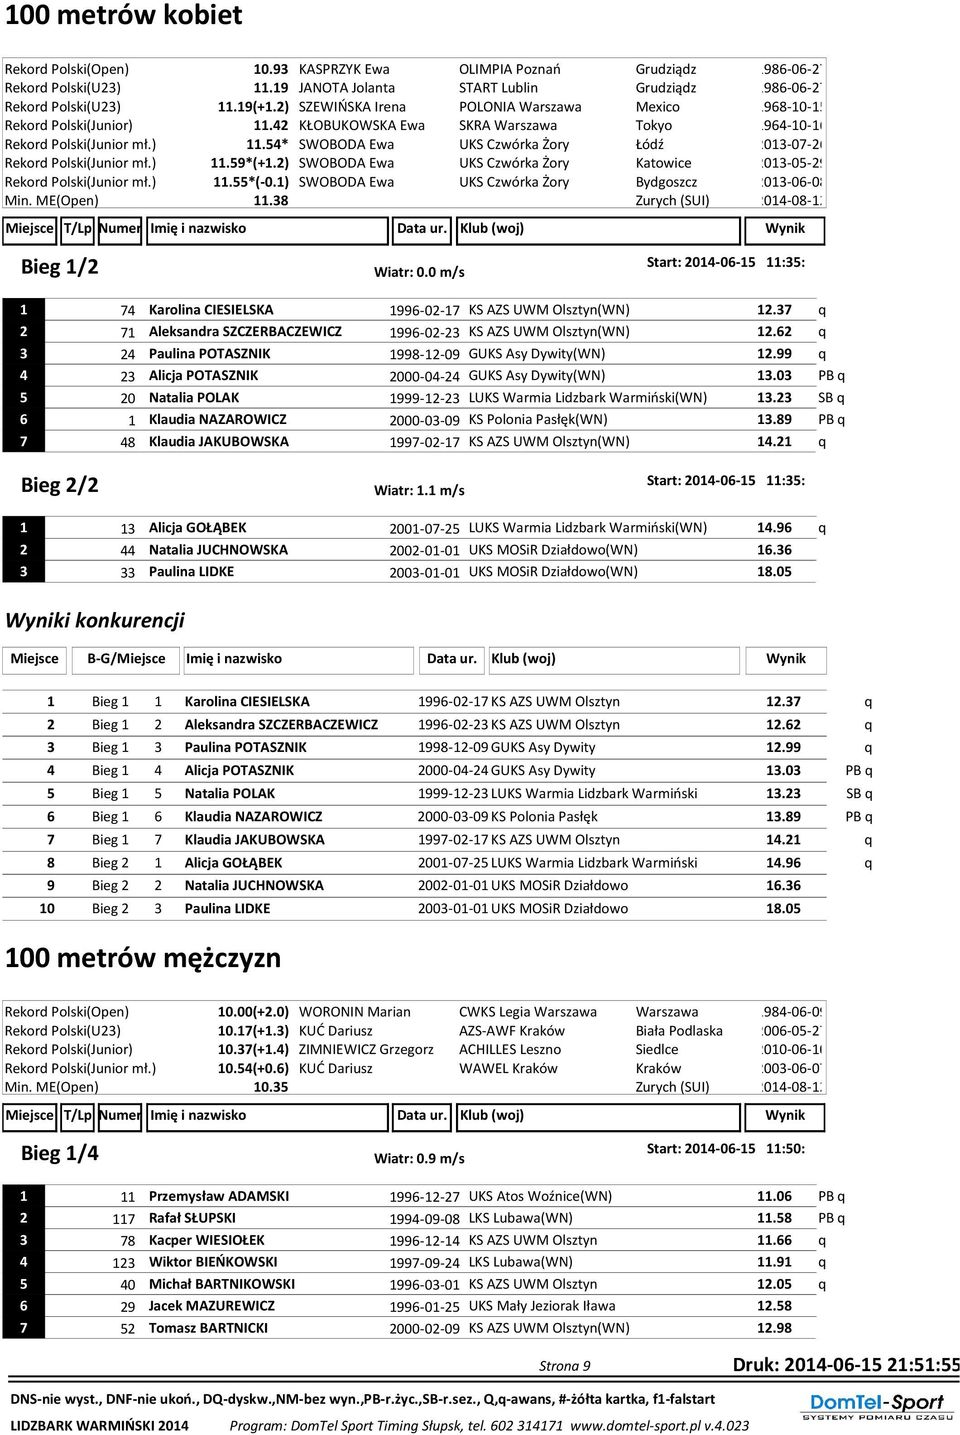 ) 11.59*(+1.2) SWOBODA Ewa UKS Czwórka Żory Katowice 2013-05-29 Rekord Polski(Junior mł.) 11.55*(-0.1) SWOBODA Ewa UKS Czwórka Żory Bydgoszcz 2013-06-08 Min. ME(Open) 11.